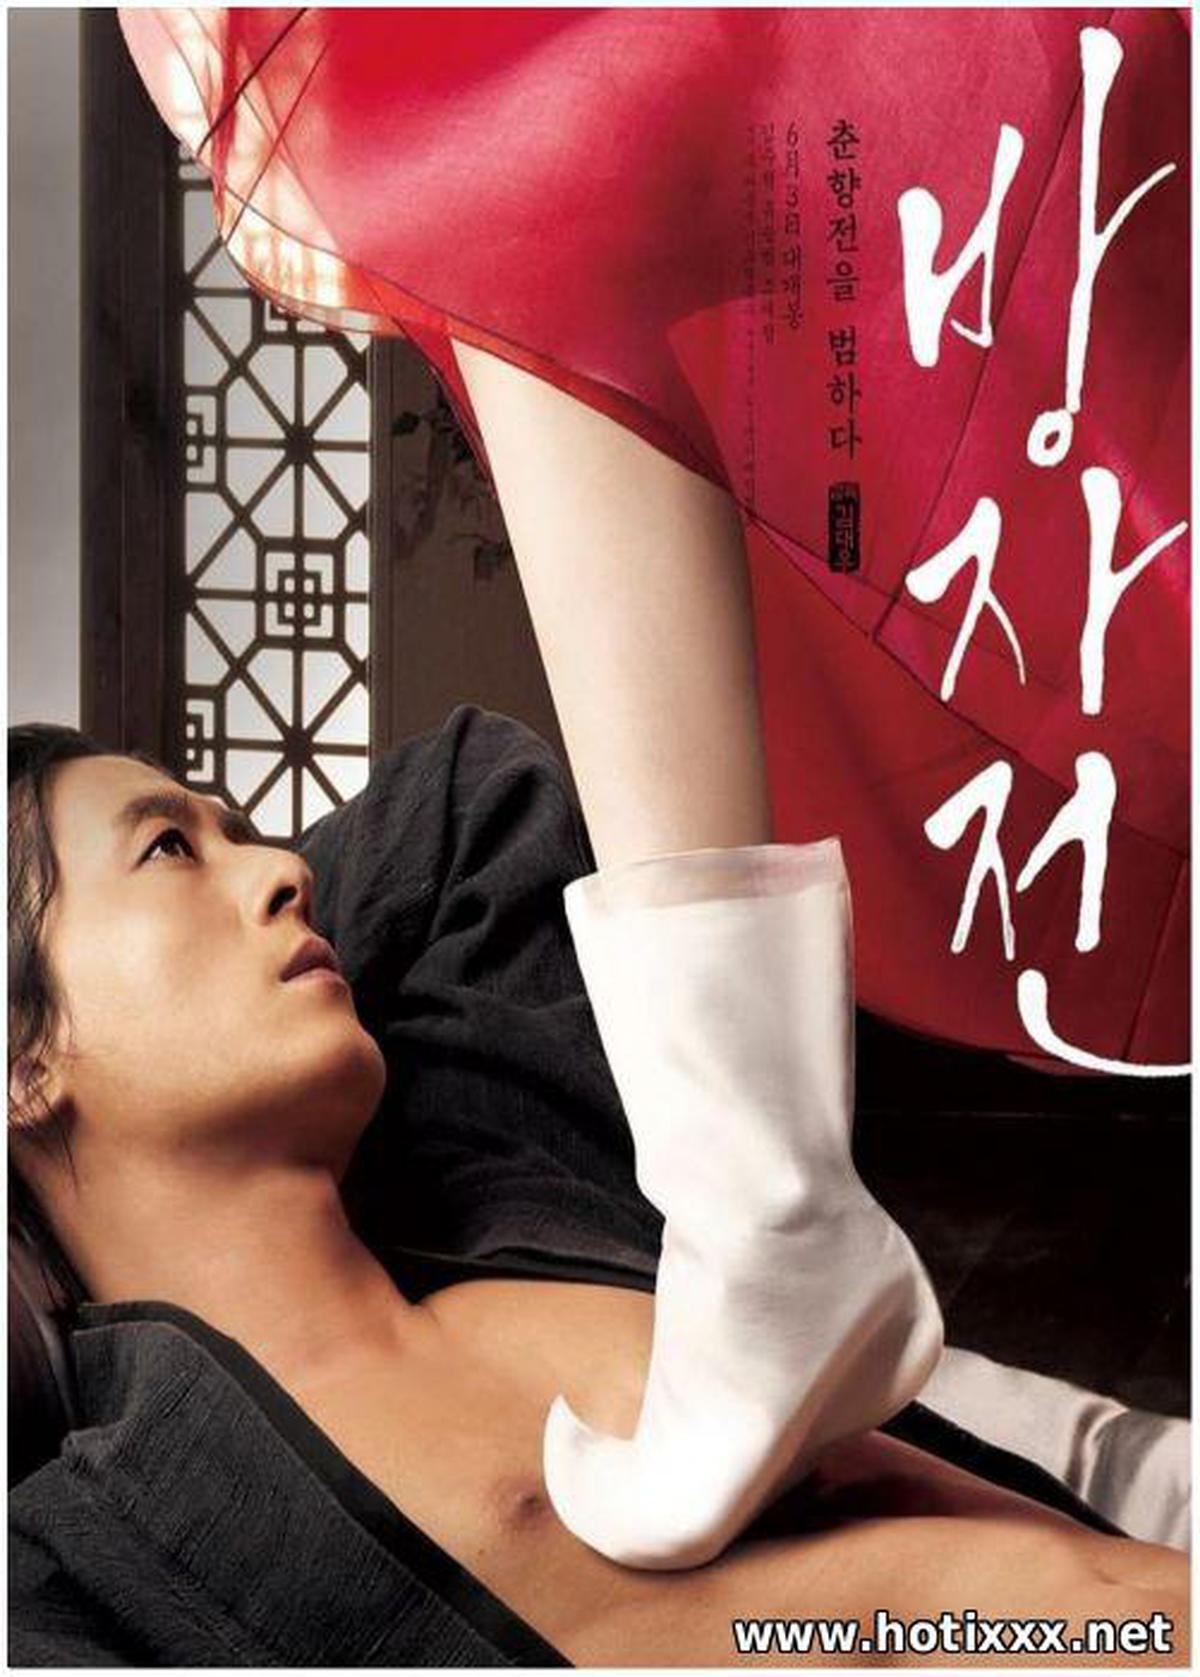 / Bang-ja-jeon / The Servant / A Story of Bang-ja / а, авдивая ория ан-чжа (2010)